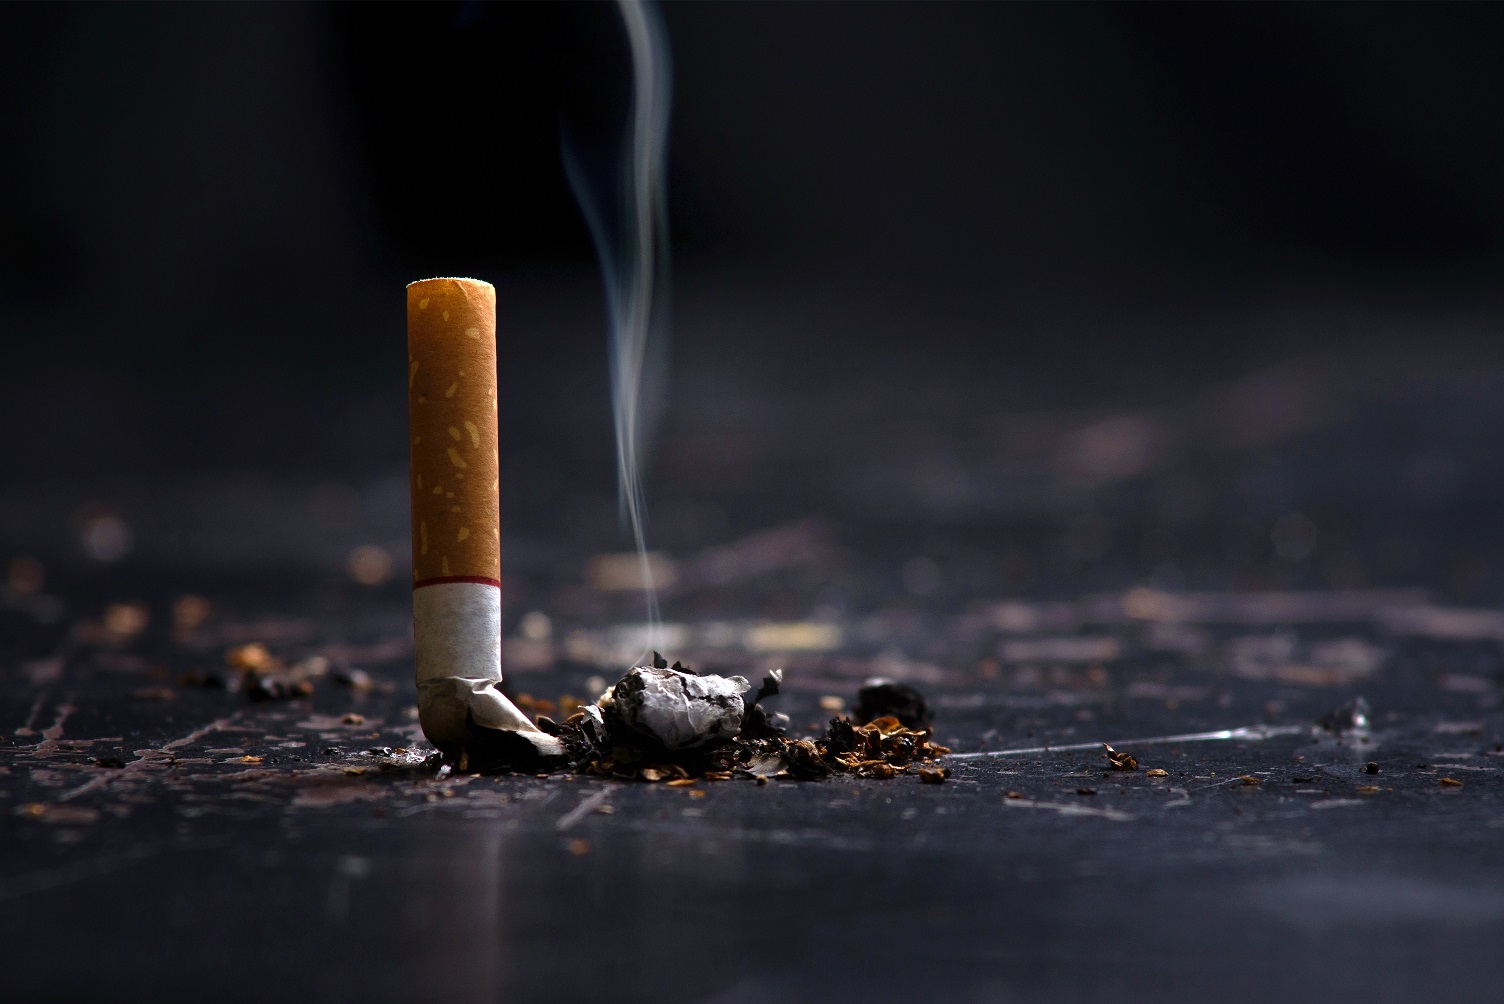 Dünyada her yıl tütün kullanımı nedeniyle 8,7 milyon insan yaşamını yitiriyor